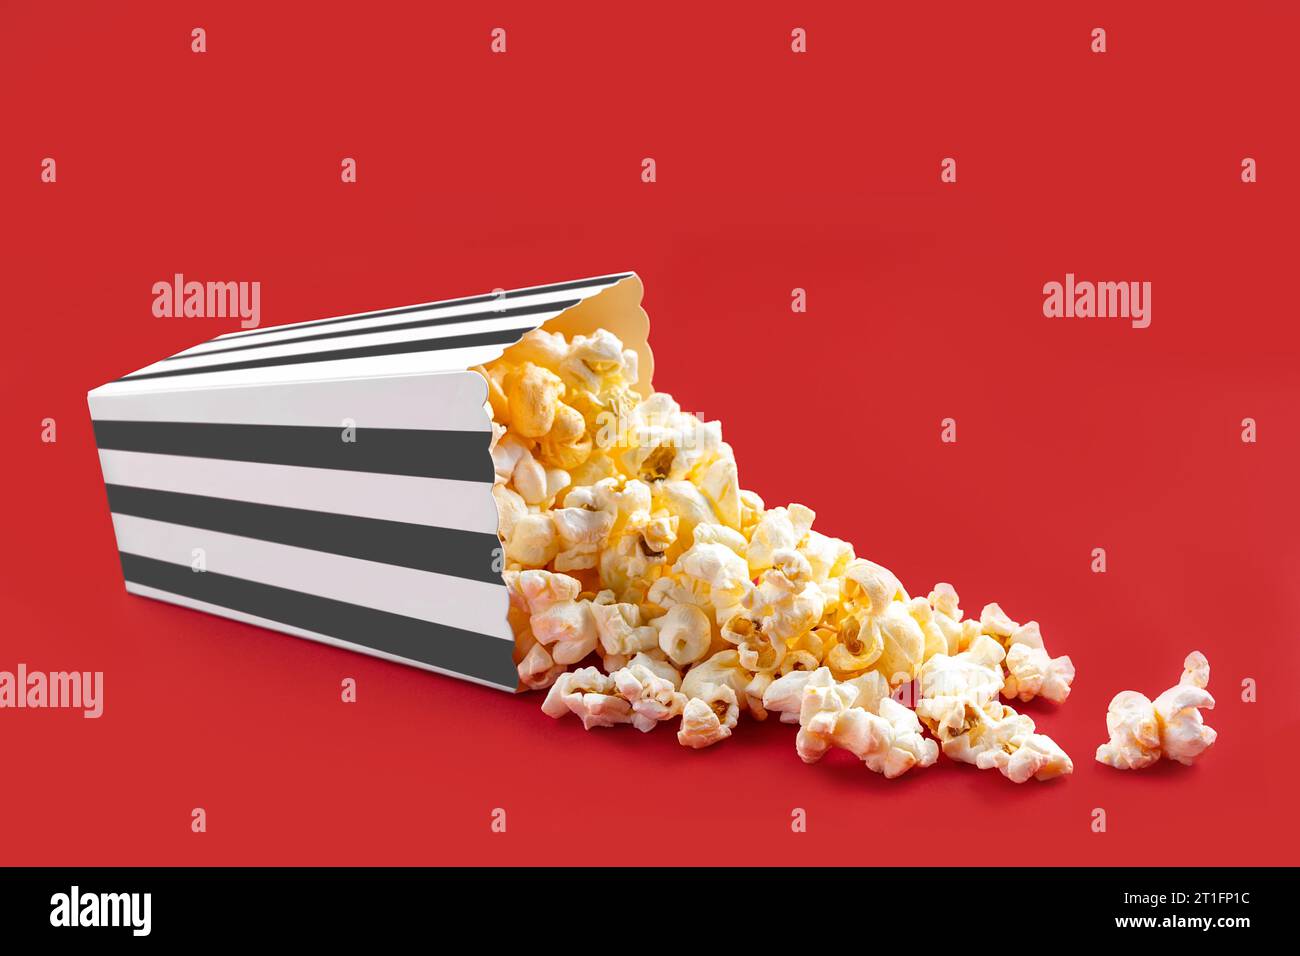 Gustosi popcorn al formaggio che cadono da una scatola di cartone a righe nere o da un secchio, isolato su sfondo rosso. Dispersione di semi di popcorn. Fast food, snack. Foto Stock